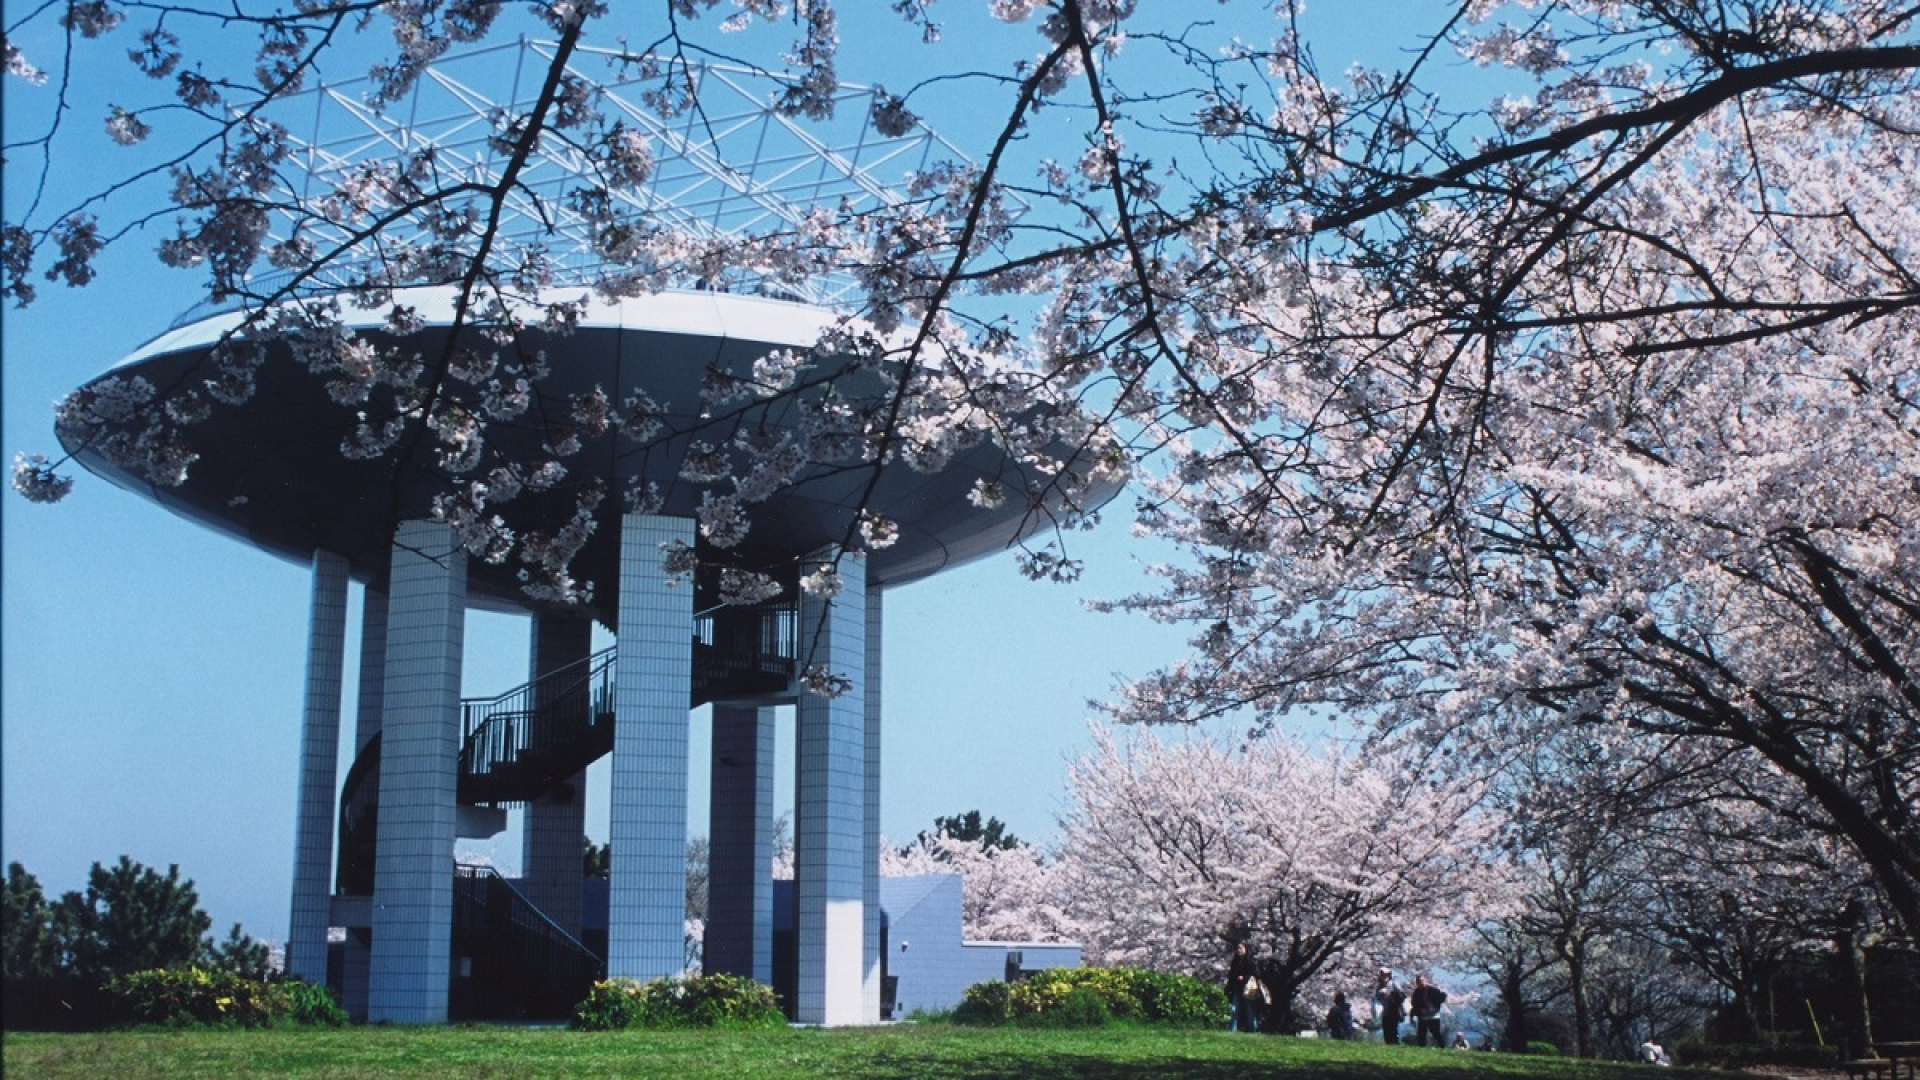 Plataforma de observación del parque Nojima Koen